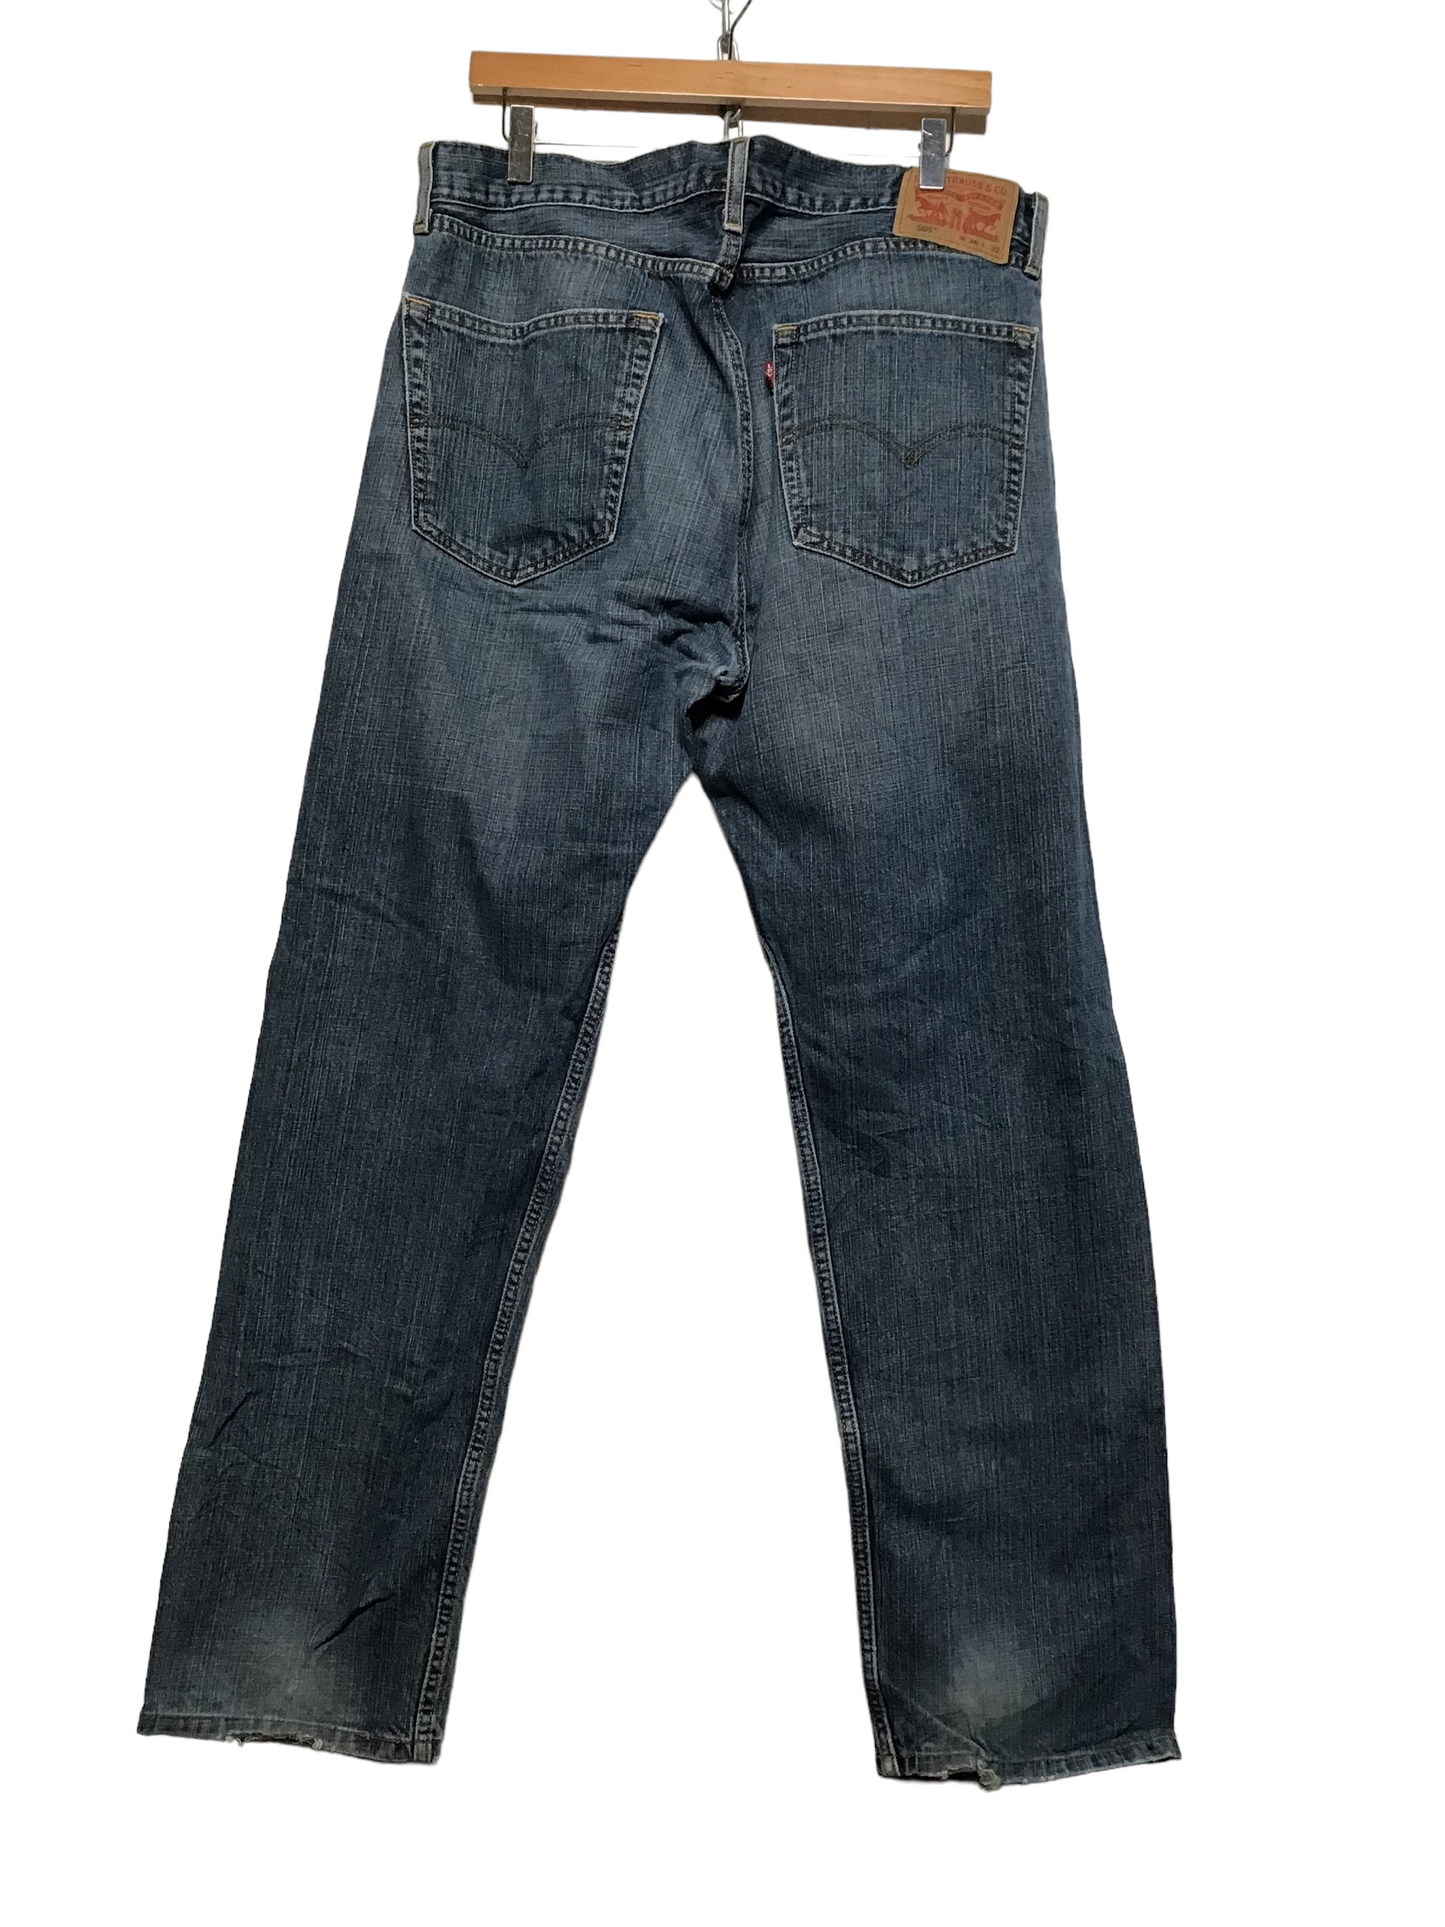 Levi 505 Jeans (36X32)